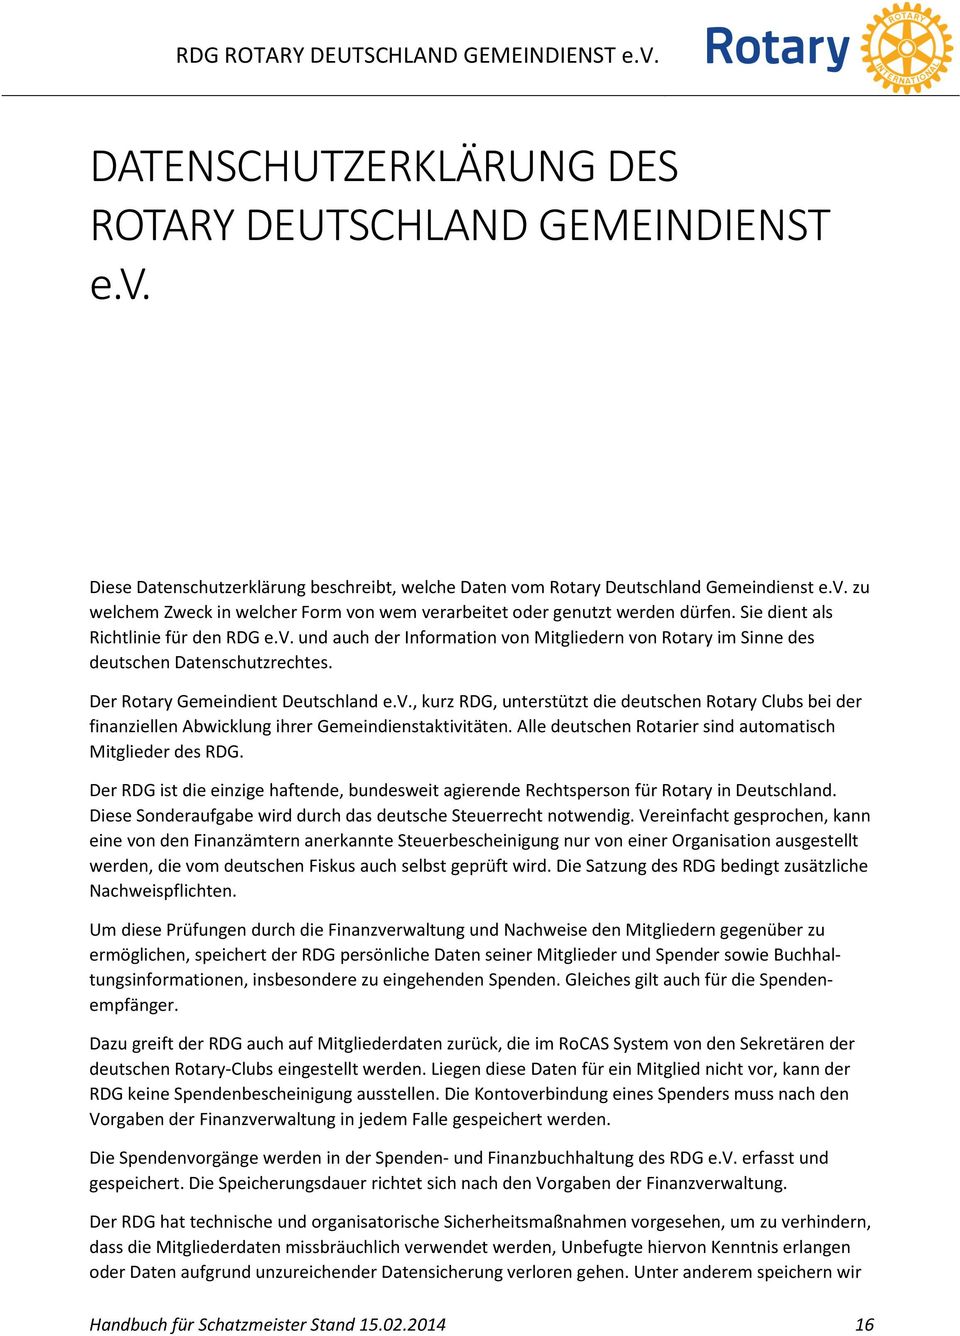 Der Rotary Gemeindient Deutschland e.v., kurz RDG, unterstützt die deutschen Rotary Clubs bei der finanziellen Abwicklung ihrer Gemeindienstaktivitäten.